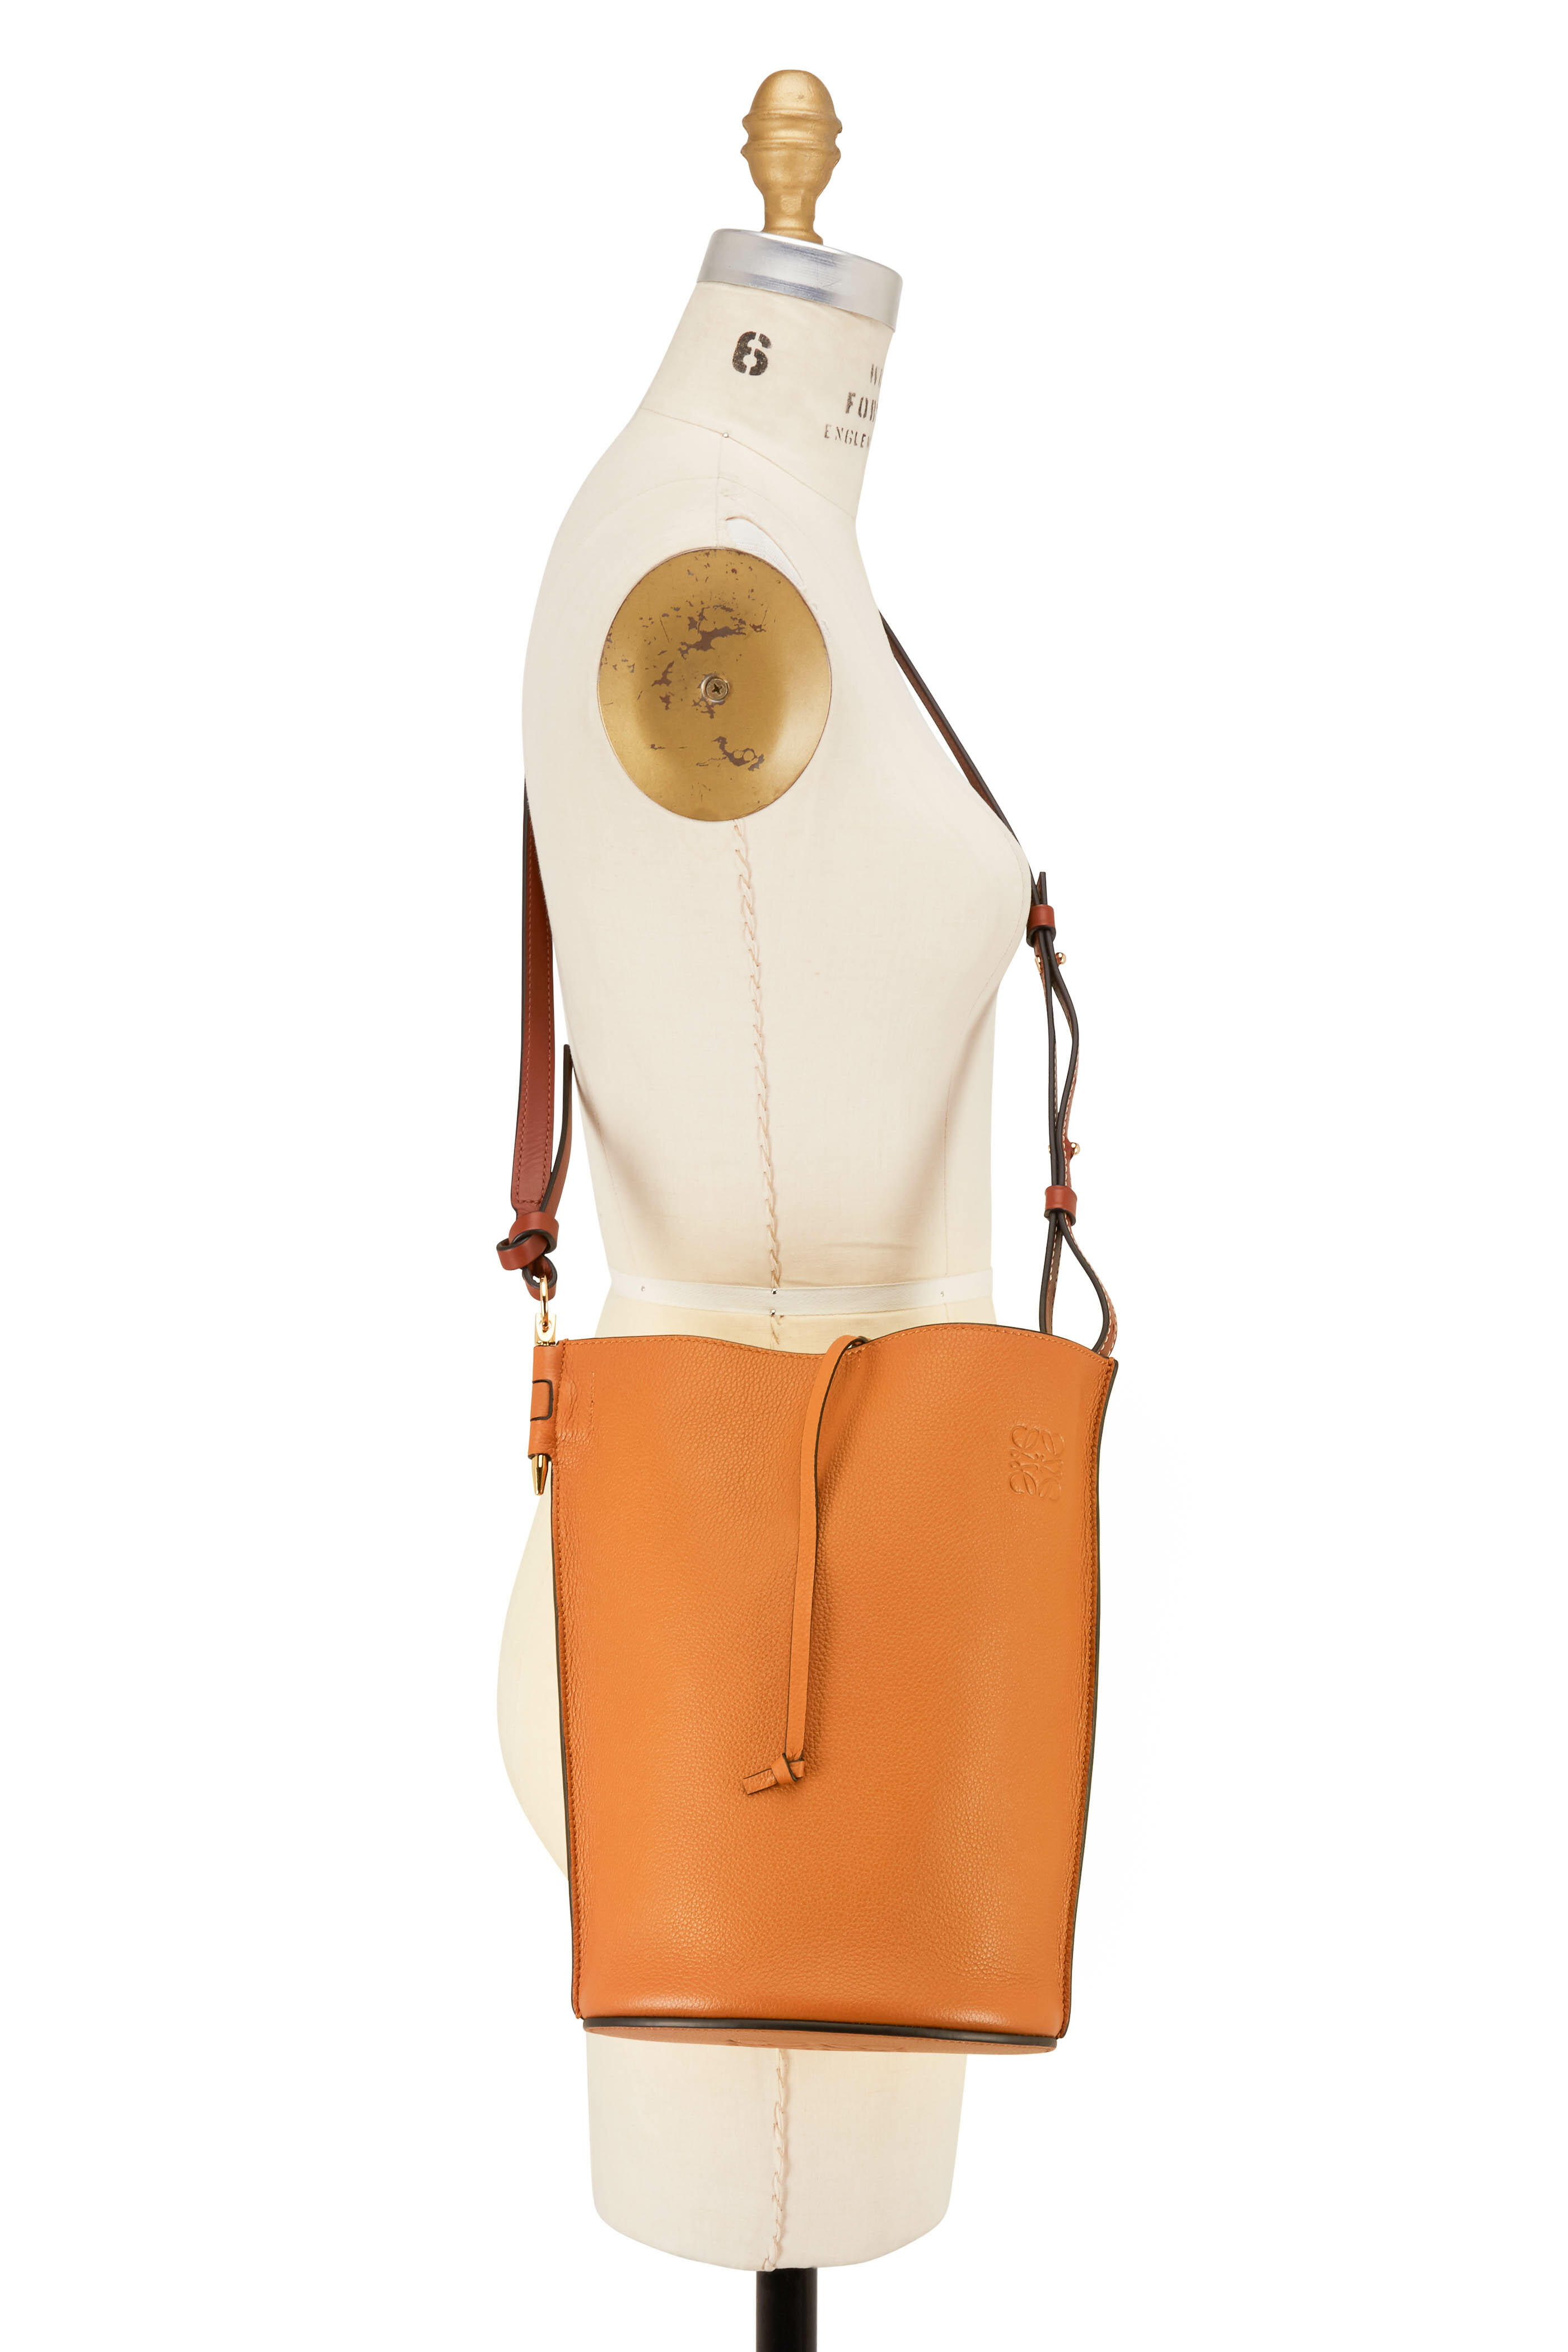 Gate bucket leather handbag Loewe Brown in Leather - 31939418